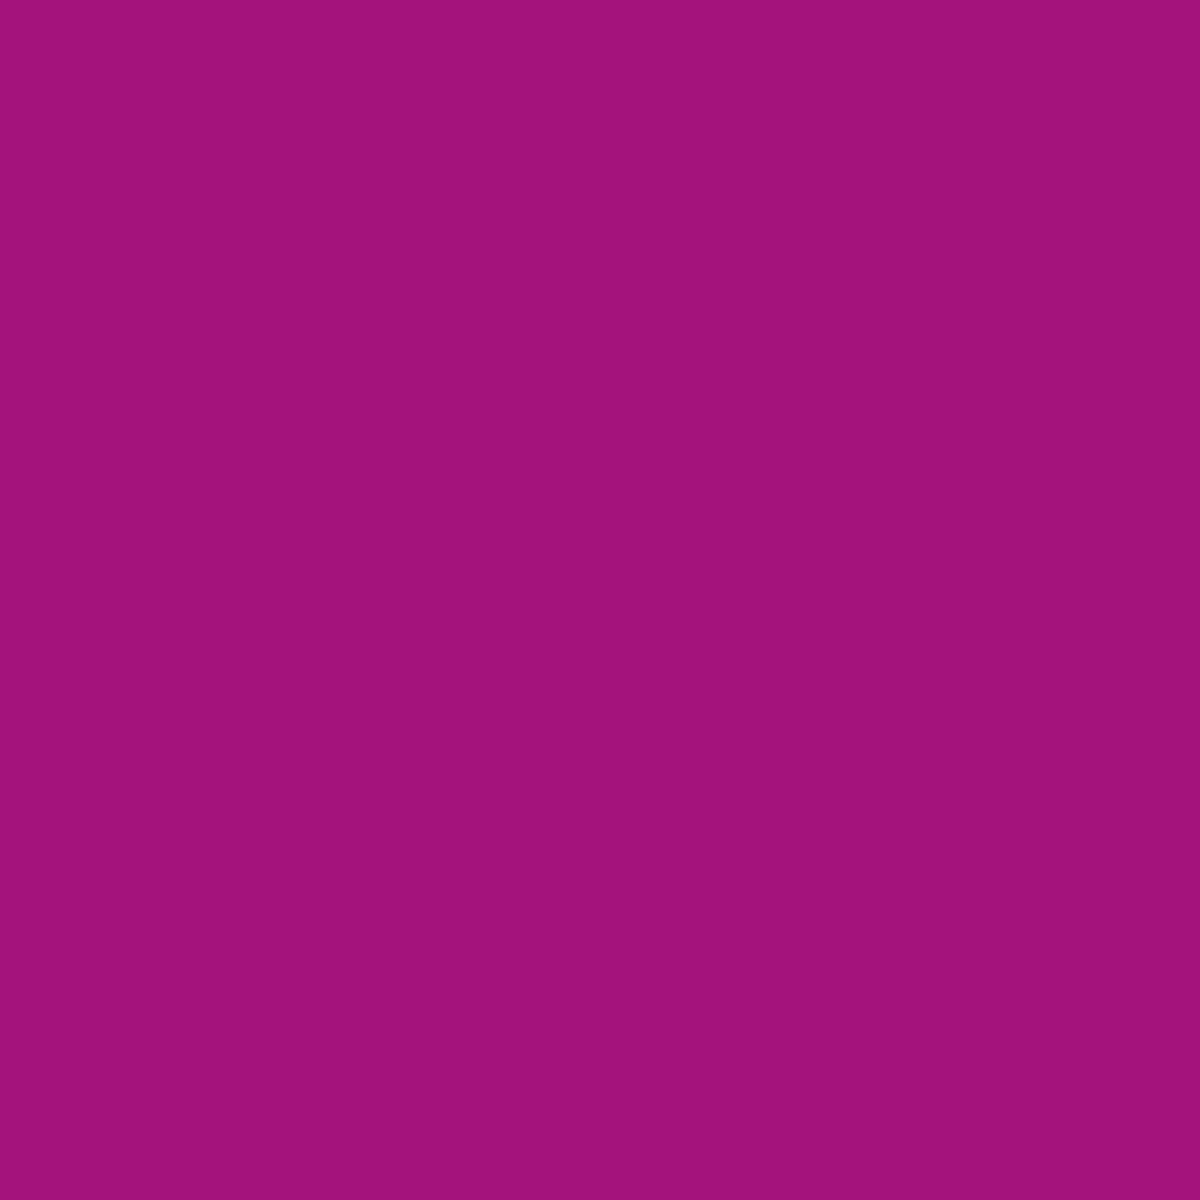 Liquitex-Gouache Acrylique 59ml S2-Violet Fluorescent